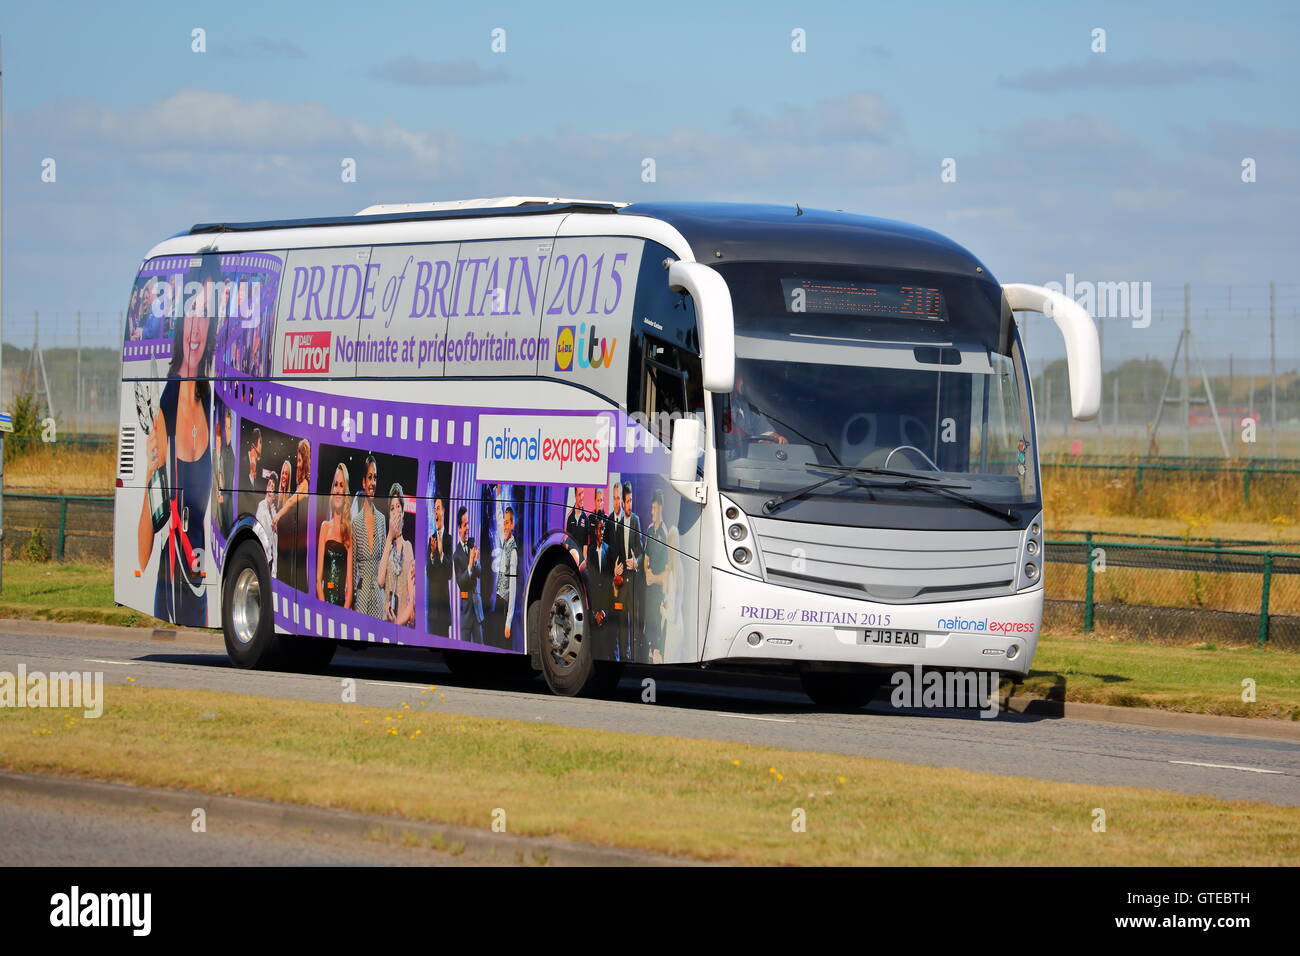 National Express stolz von Großbritannien 2015-Bus in der Nähe von Heathrow Airport Stockfoto